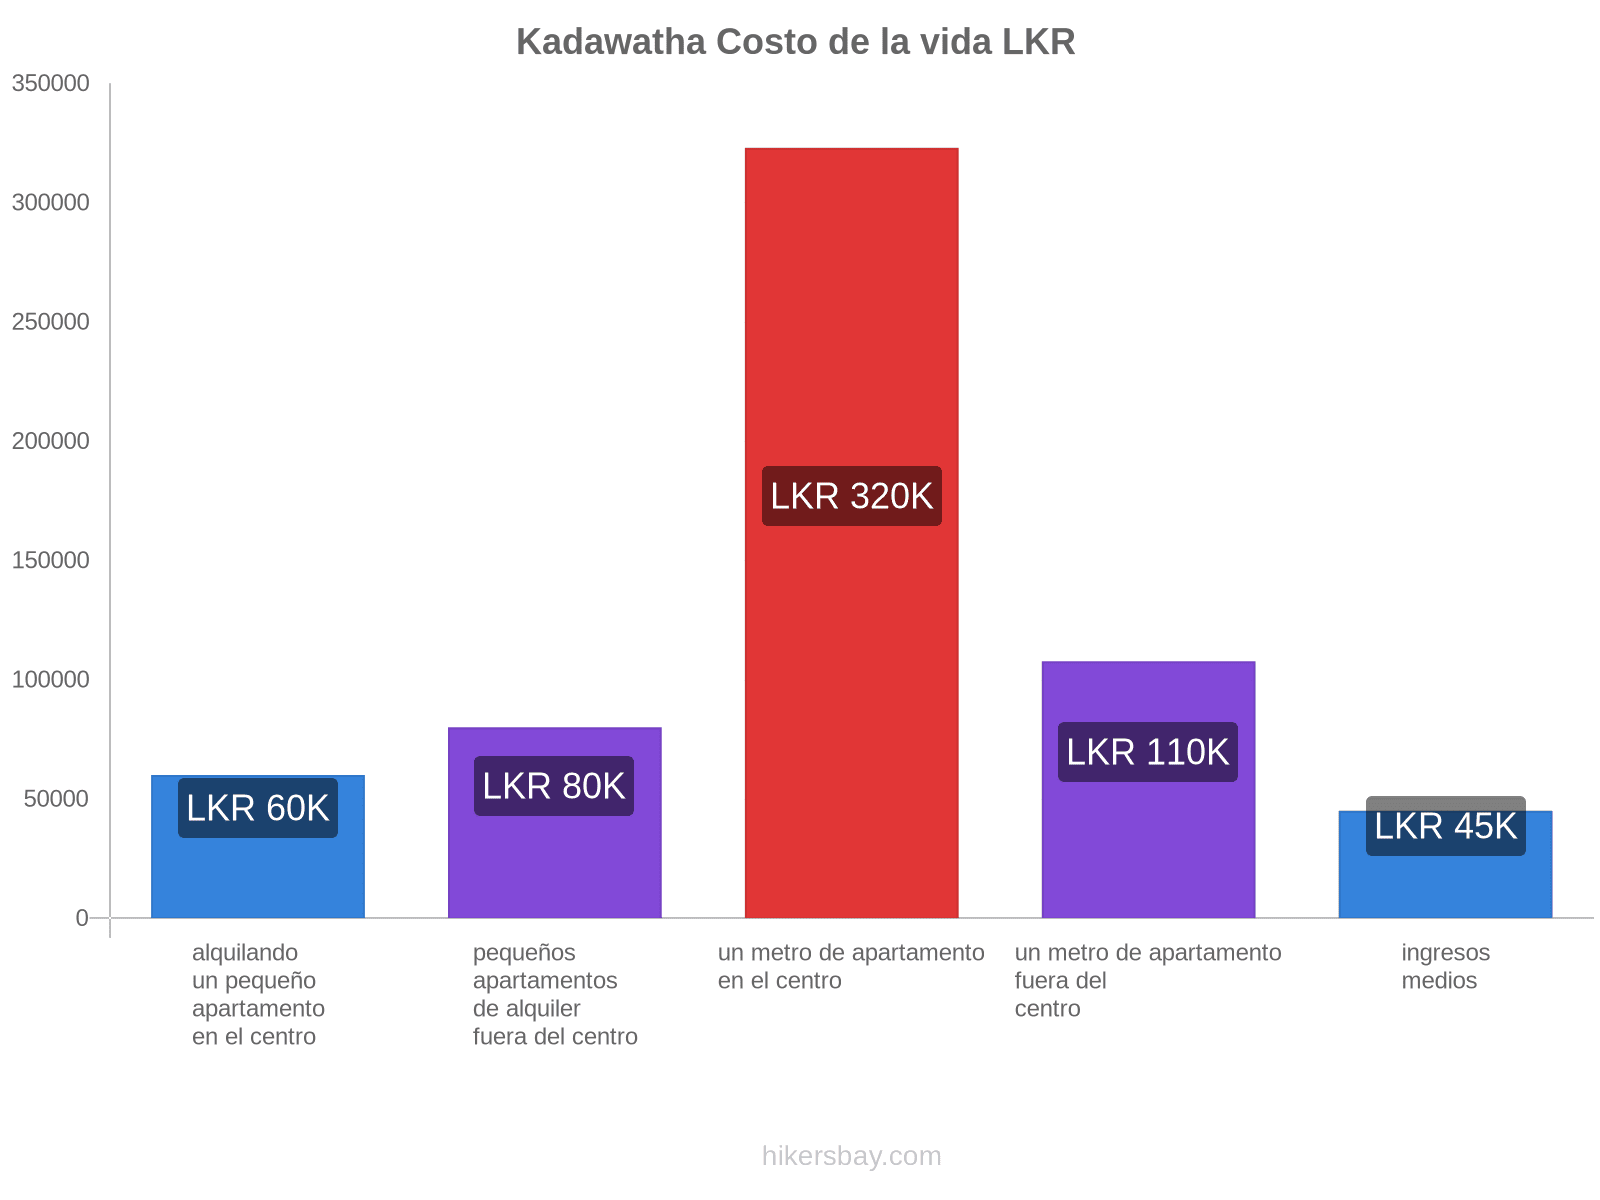 Kadawatha costo de la vida hikersbay.com